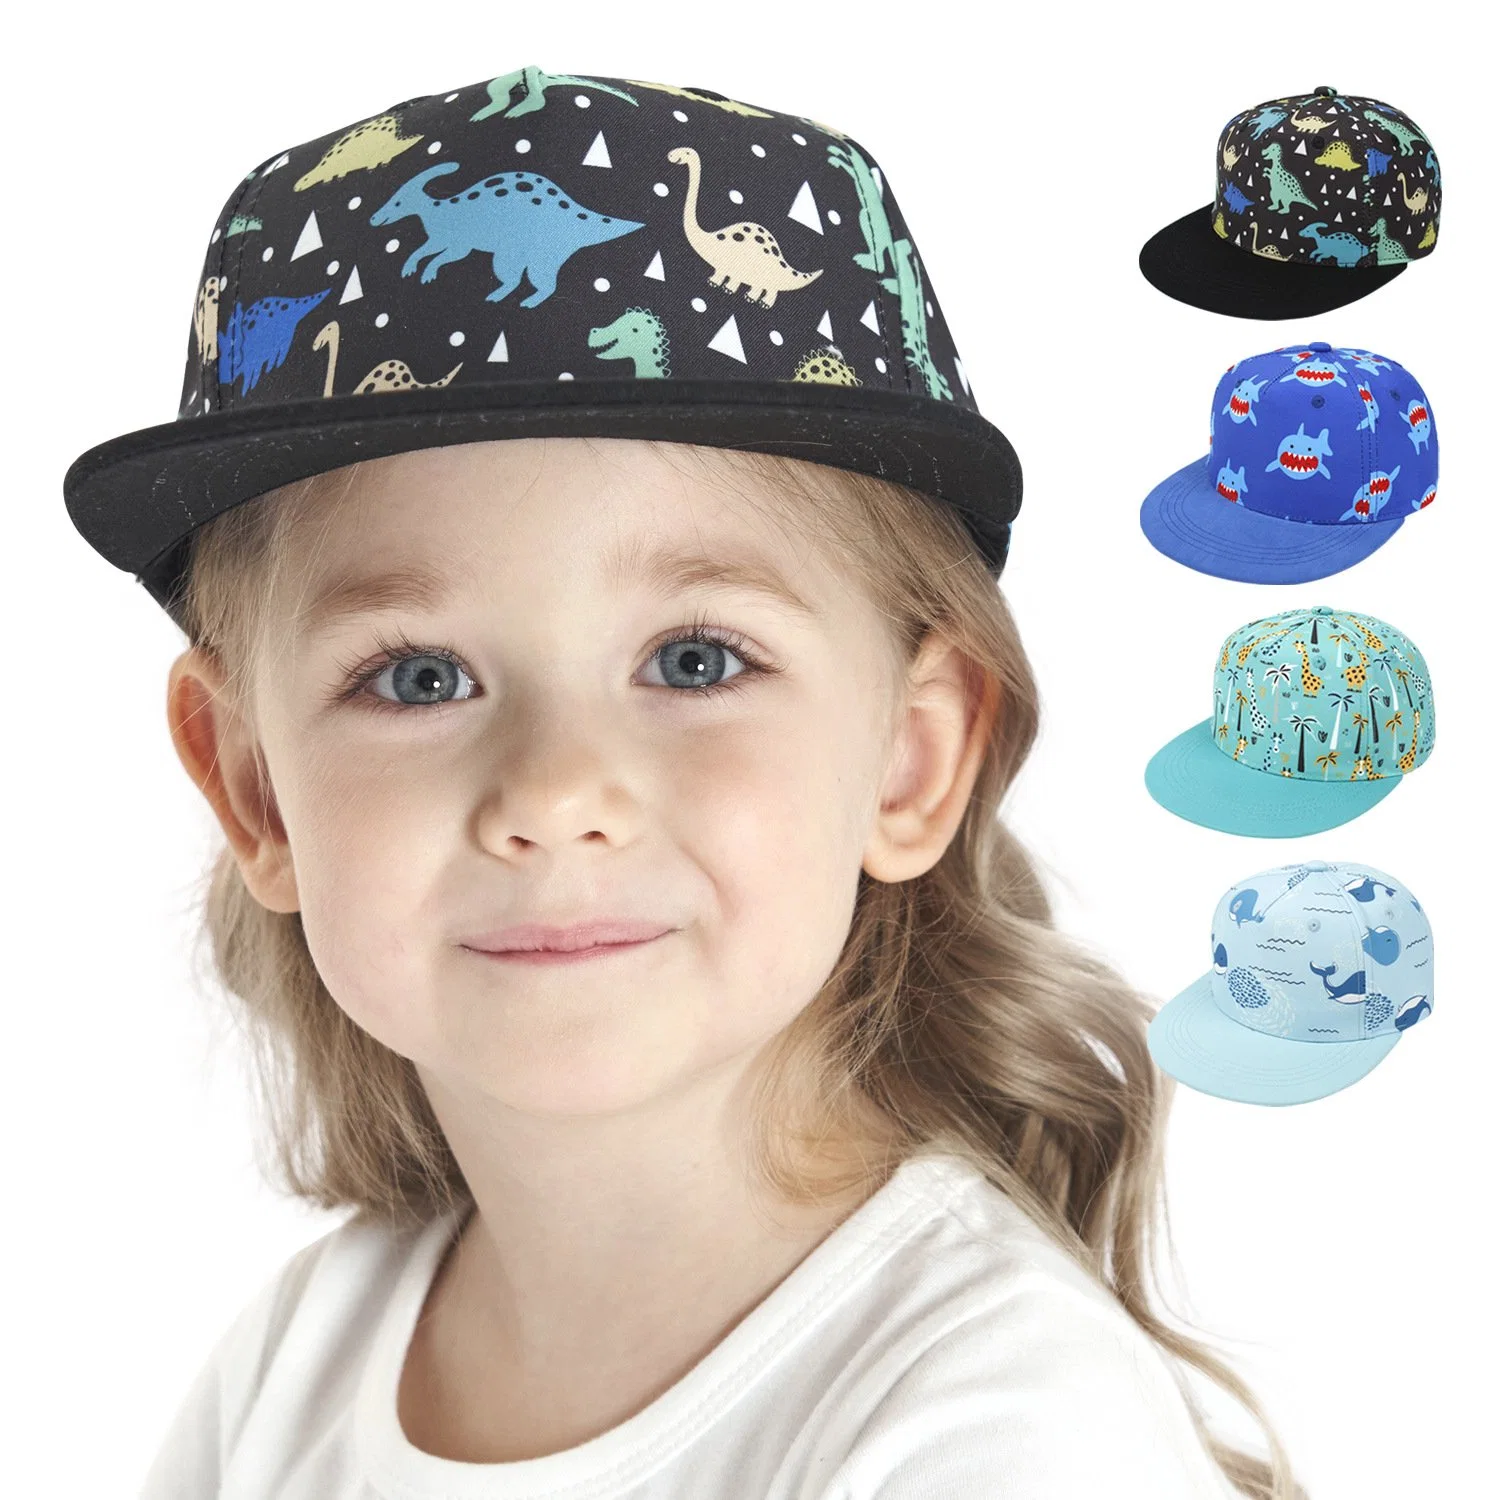 Gorros de sol con gorras estampadas ajustables de algodón lavado para niños pequeños